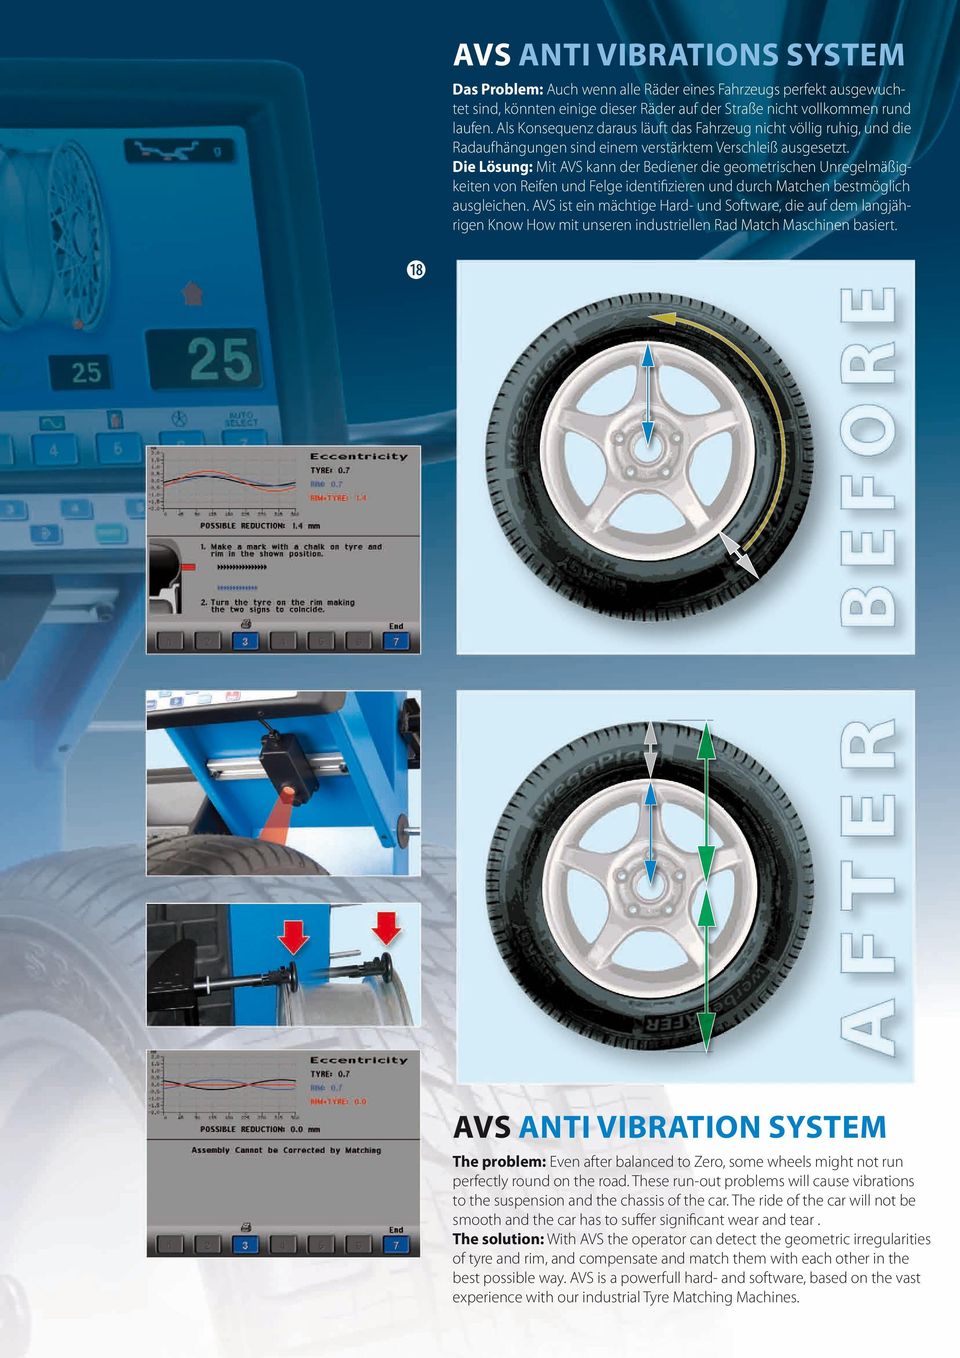 Die Lösung: Mit AVS kann der Bediener die geometrischen Unregelmäßigkeiten von Reifen und Felge identifizieren und durch Matchen bestmöglich ausgleichen.